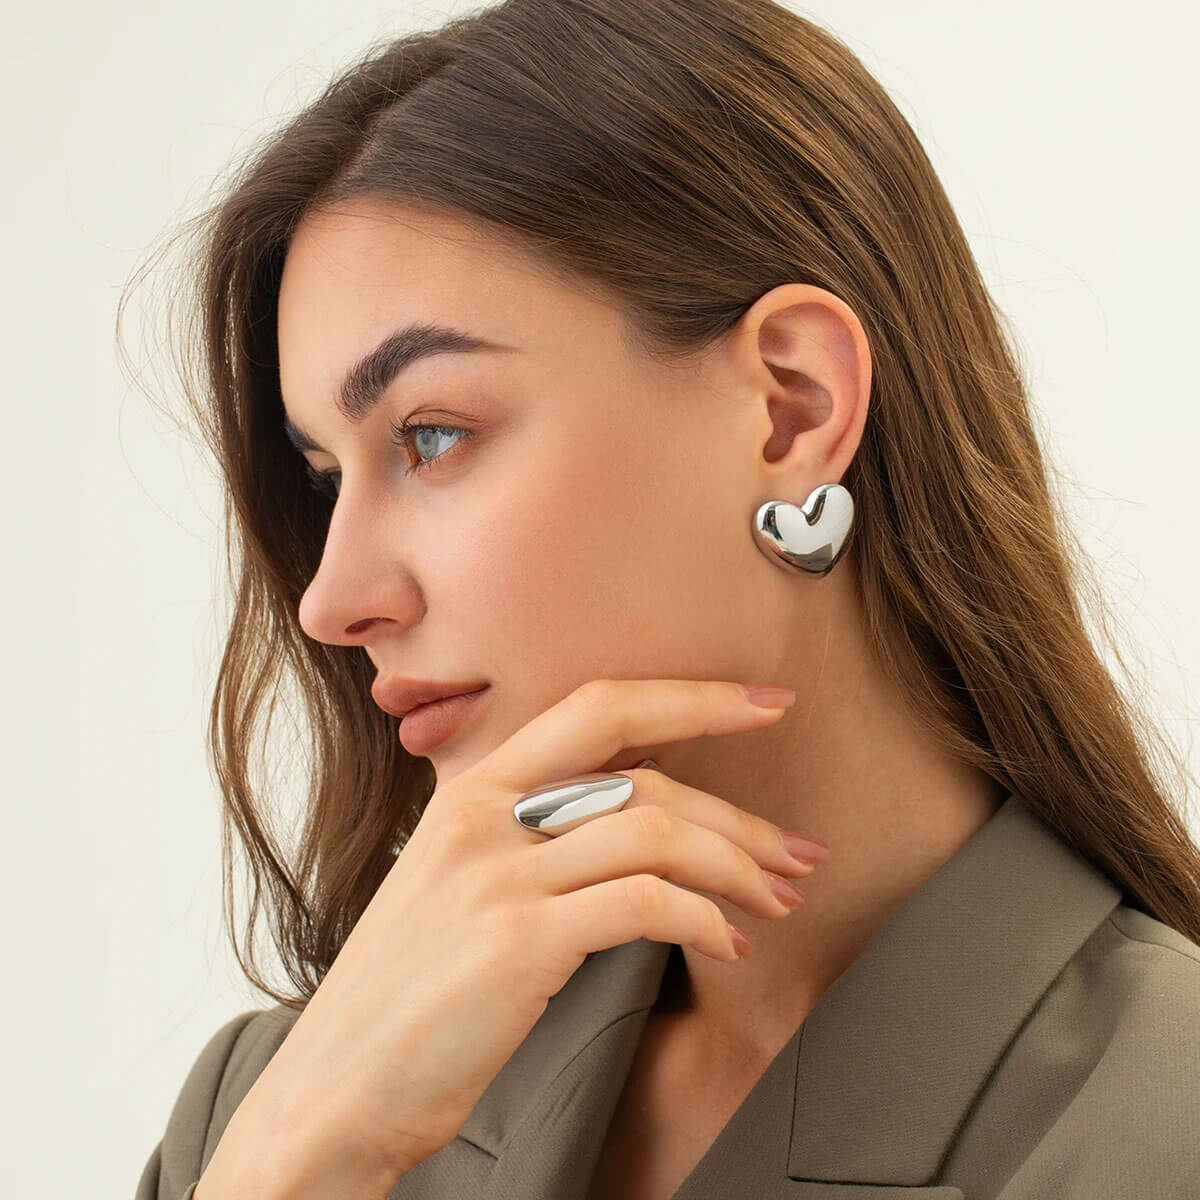 Women's Earrings  Find Trendy Earrings Online at Milk Money